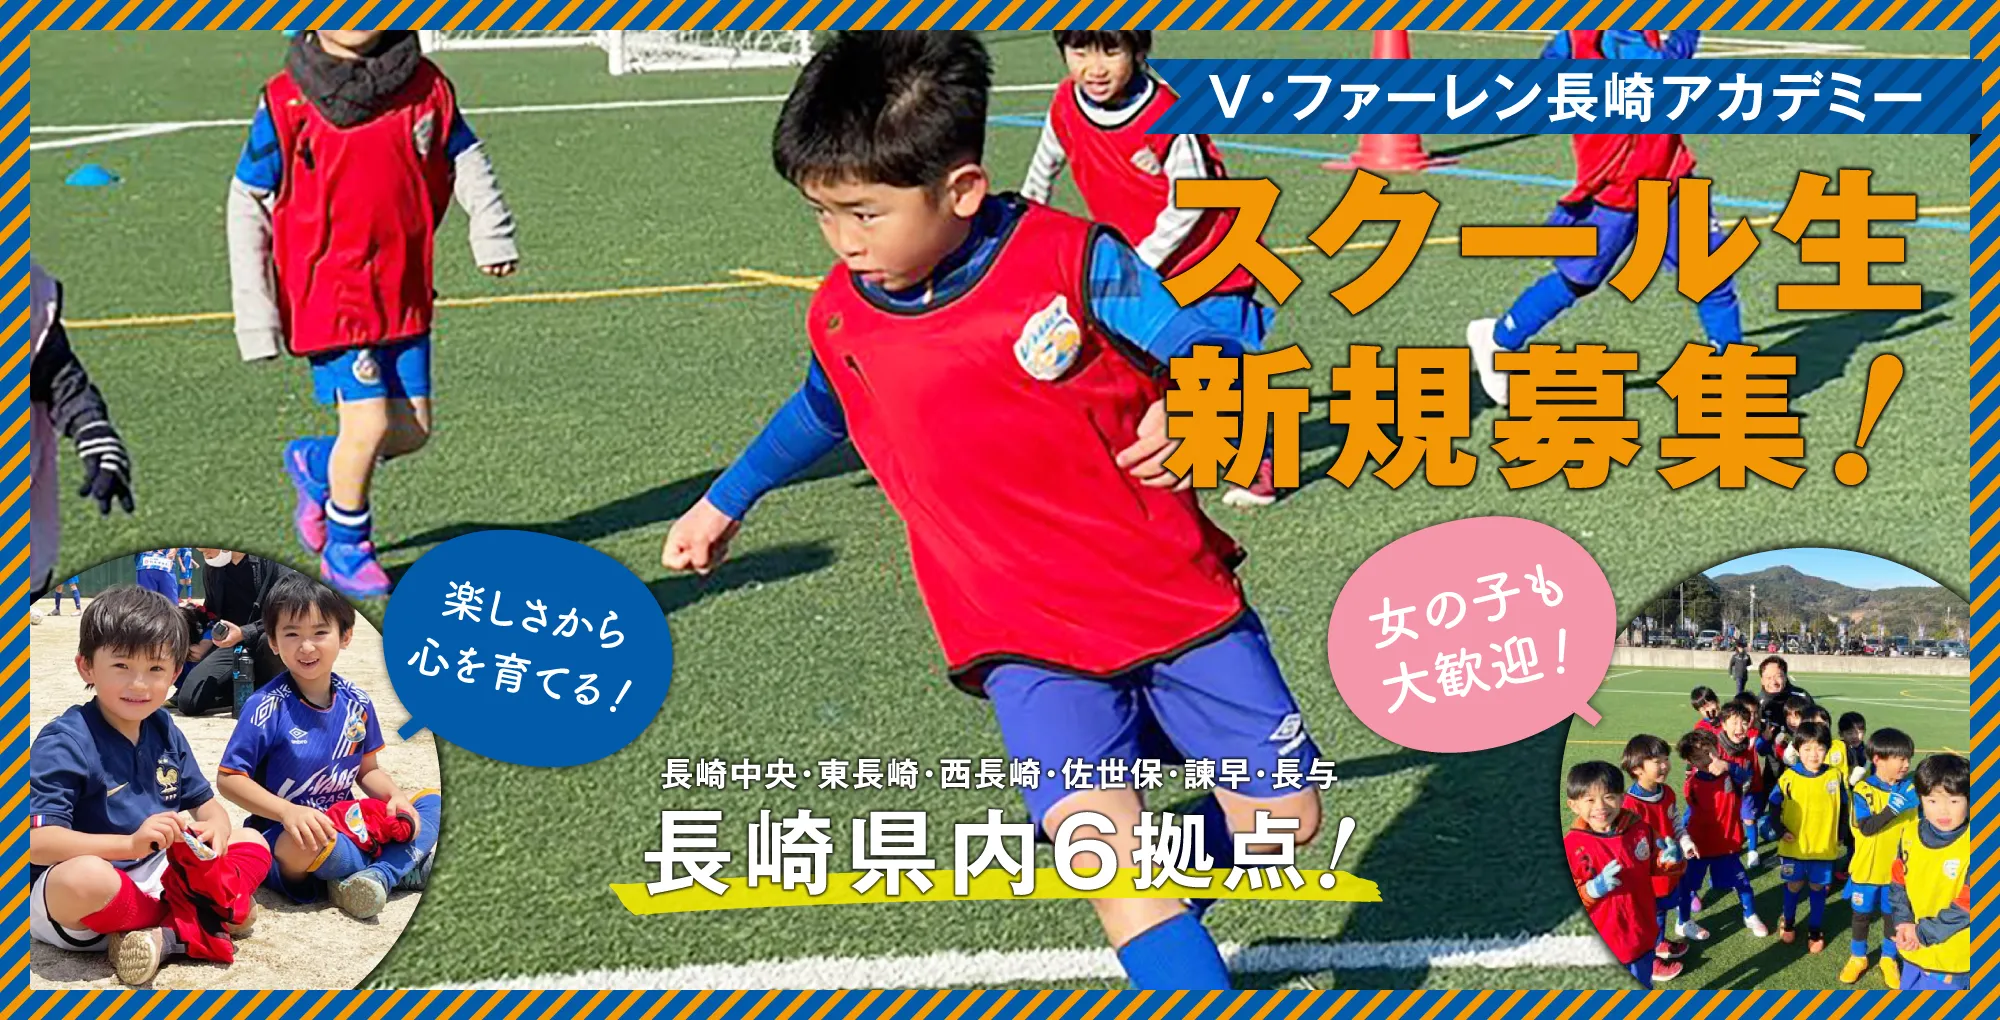 サッカーを通して「生きる楽しさを」すべての子供たちに伝えたい All For Kids 子供たちの未来の為に